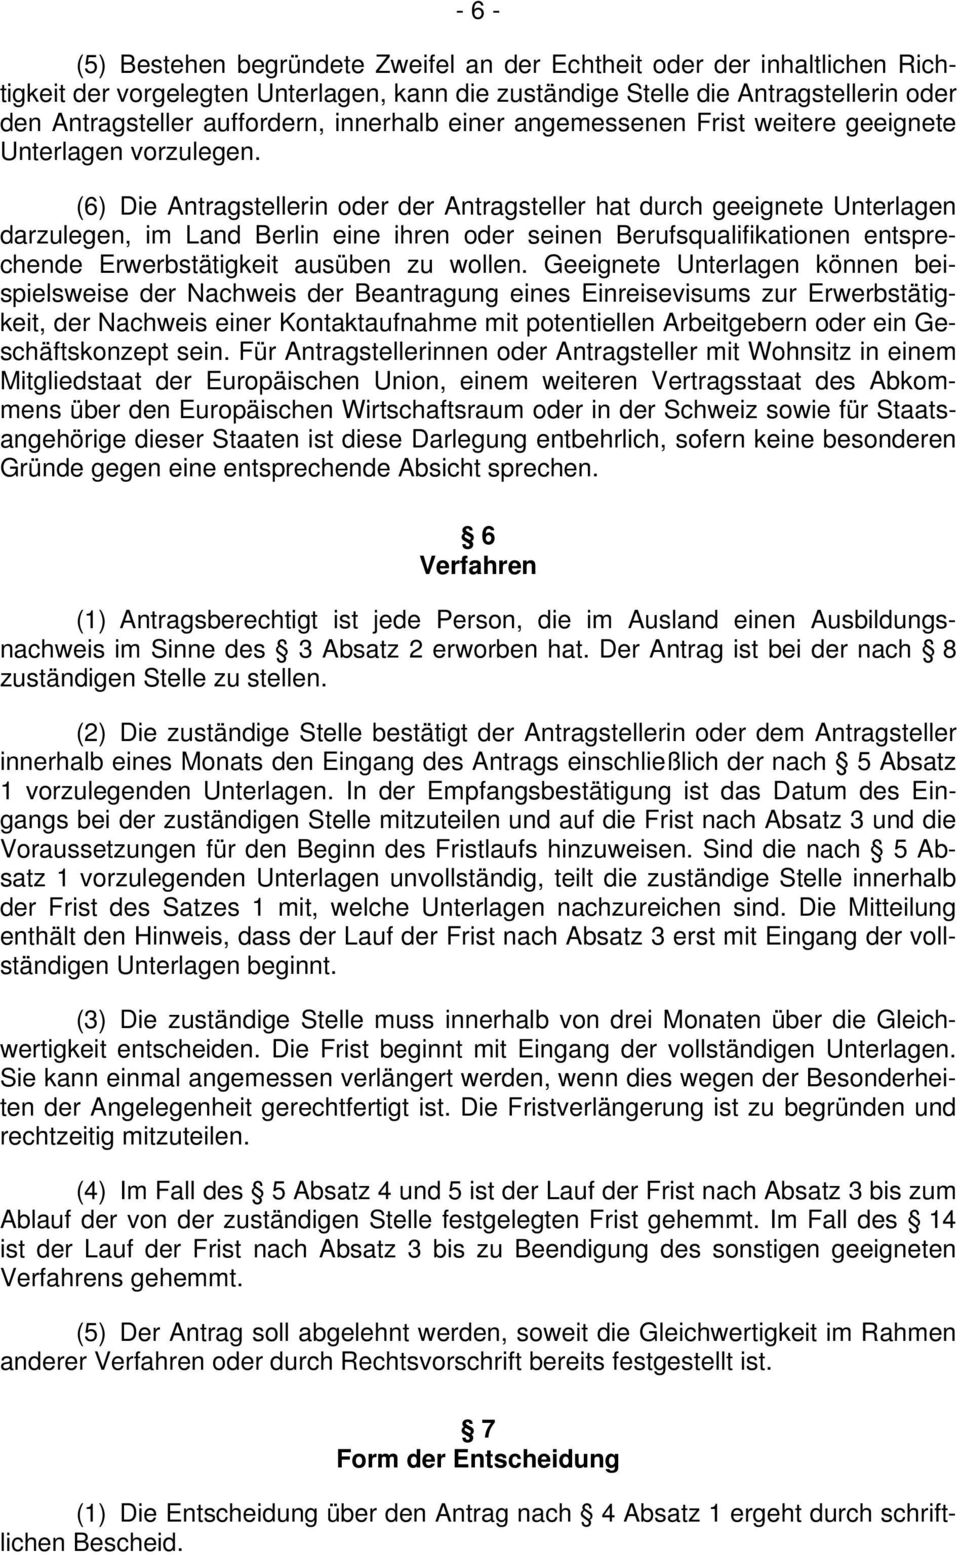 (6) Die Antragstellerin oder der Antragsteller hat durch geeignete Unterlagen darzulegen, im Land Berlin eine ihren oder seinen Berufsqualifikationen entsprechende Erwerbstätigkeit ausüben zu wollen.